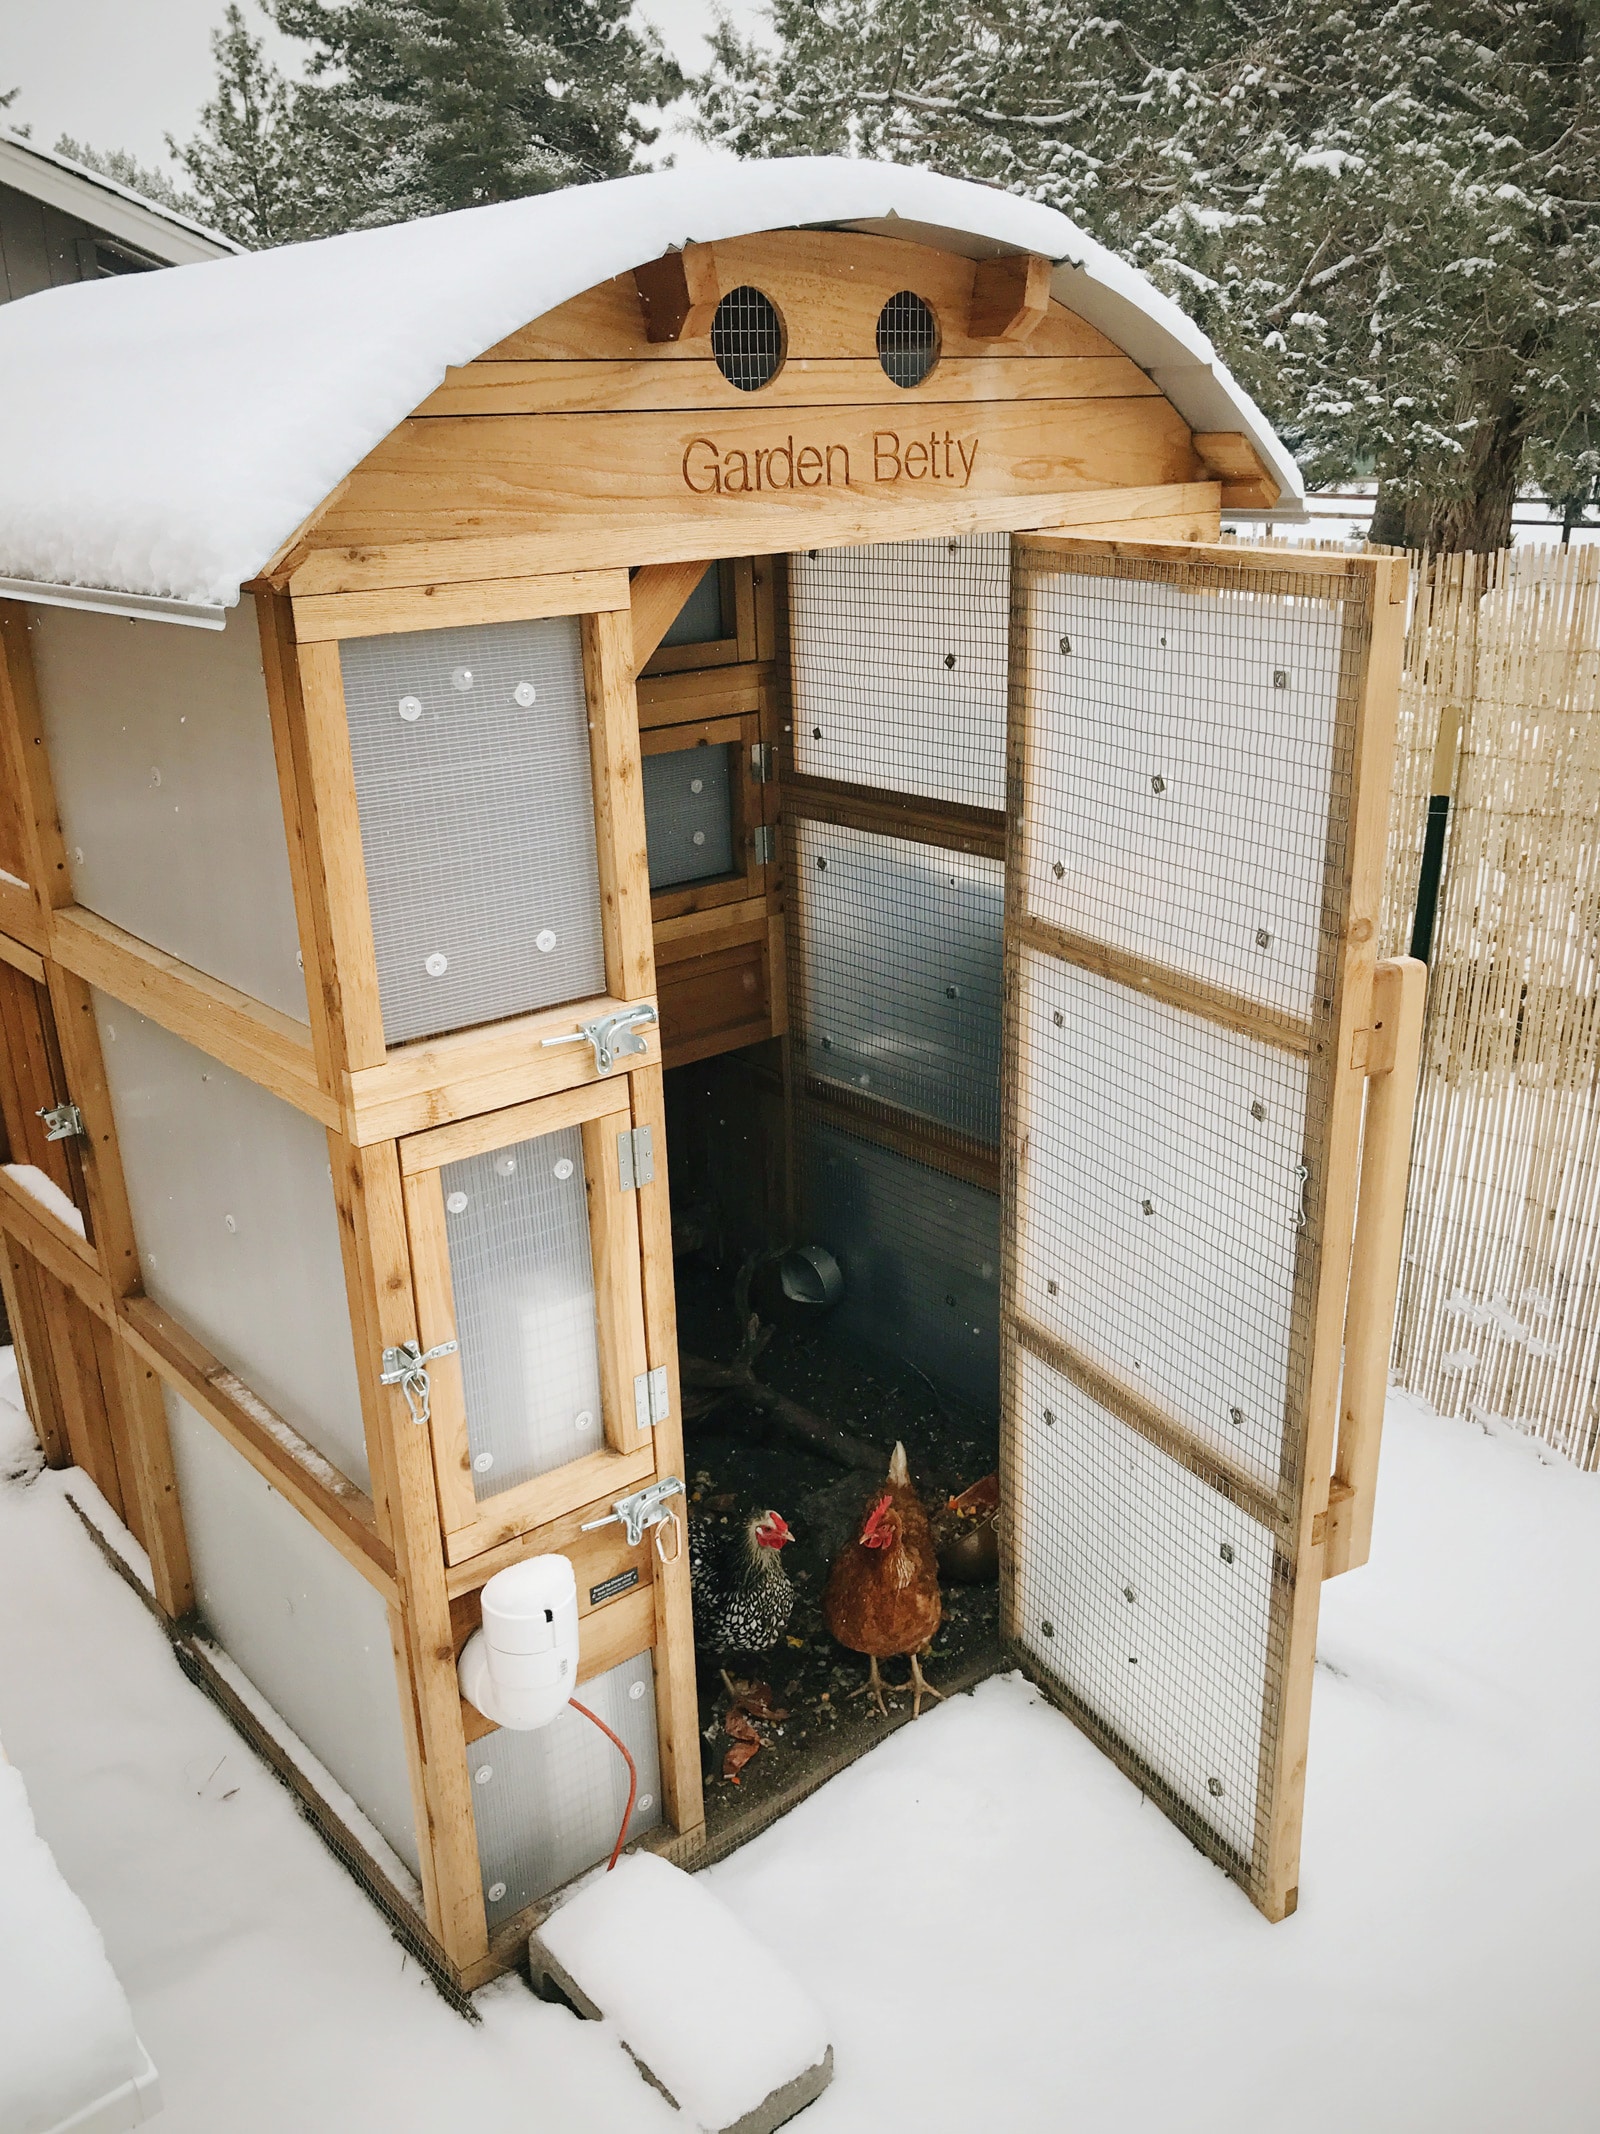 Chicken coop in winter